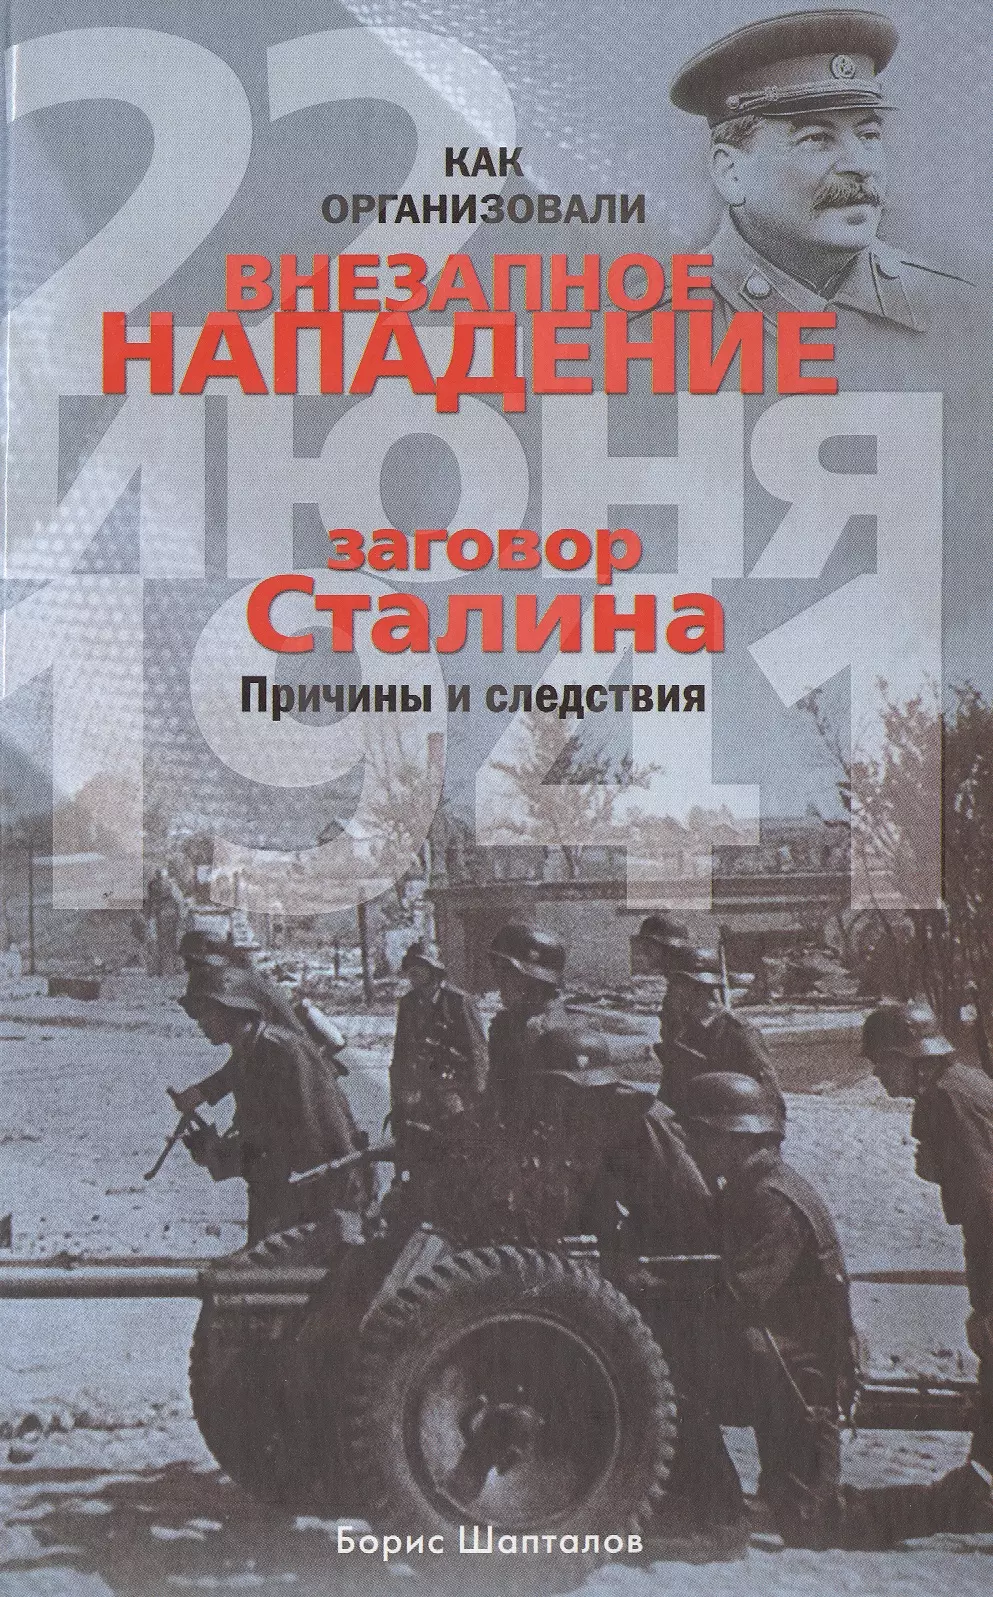 Шапталов Борис Николаевич - Как организовали внезапное нападение 22 июня 1941. Заговор Сталина. Причины и следствия